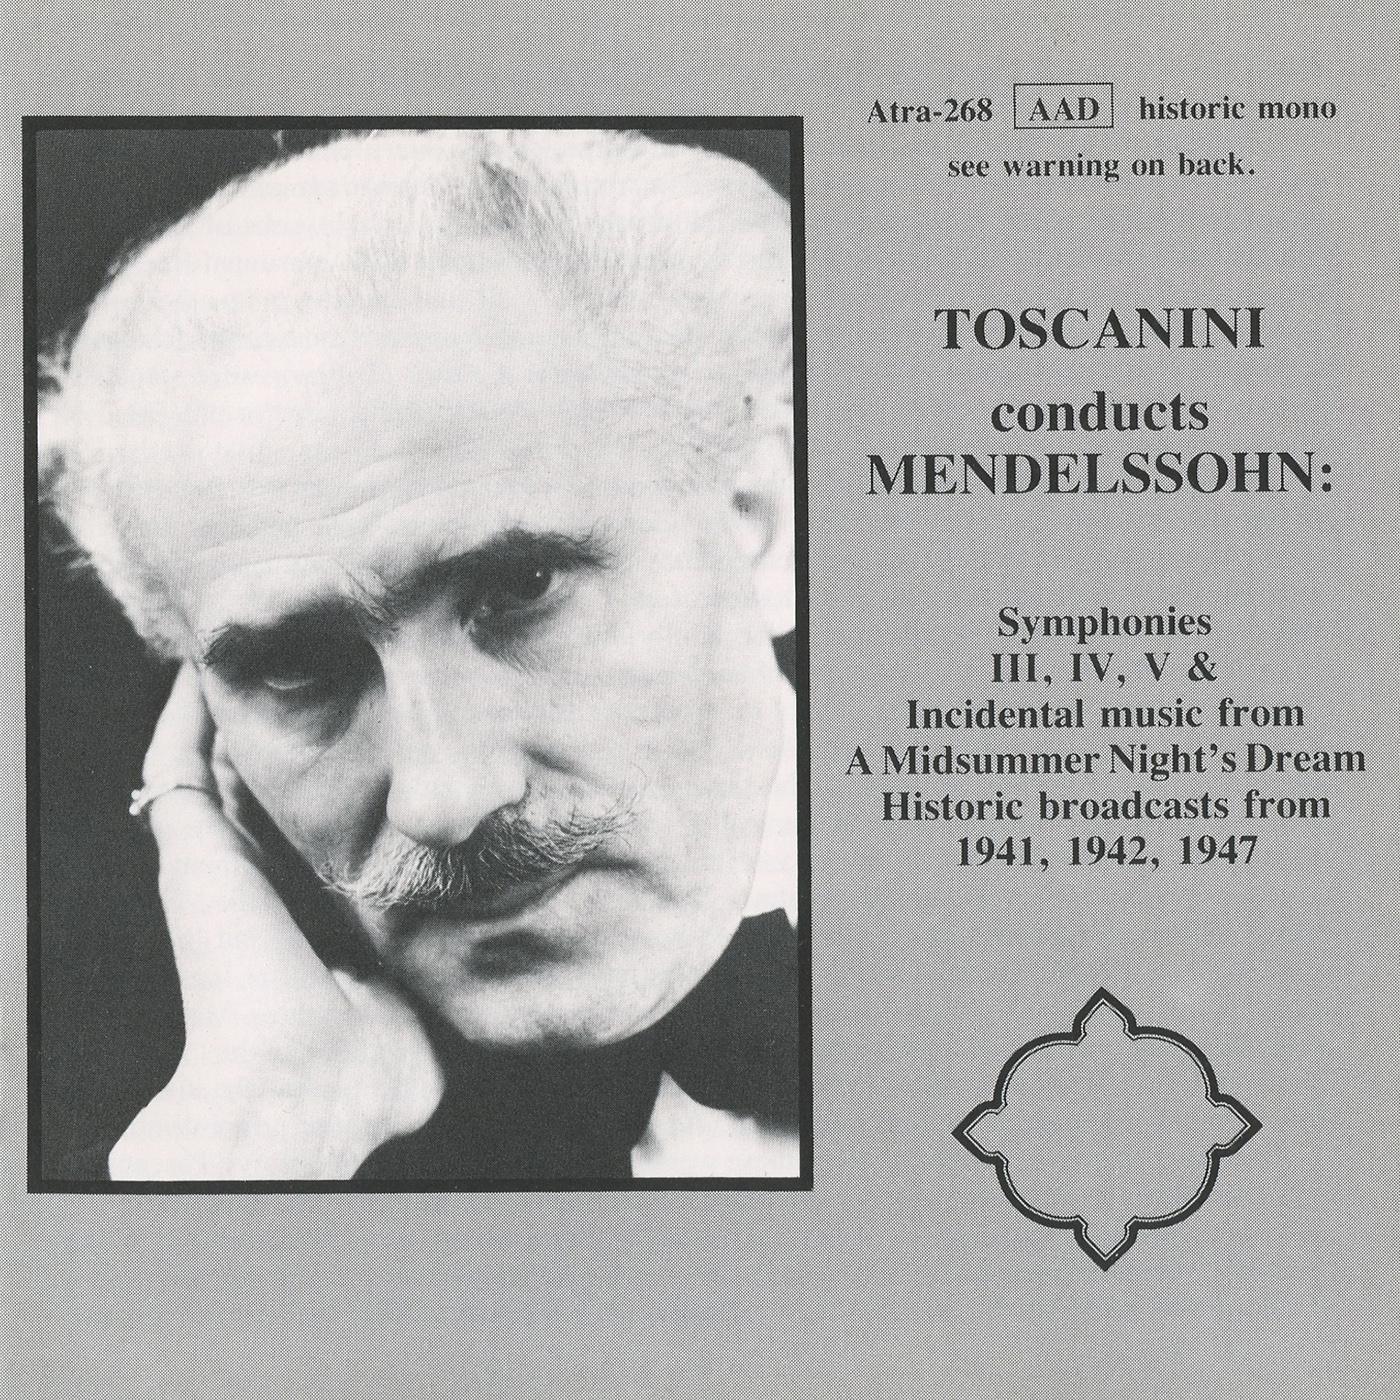 MENDELSSOHN, Felix: Symphonies Nos. 3-5 / A Midsummer Night's Dream (excerpts) (NBC Symphony, Toscanini) (1941-1947)